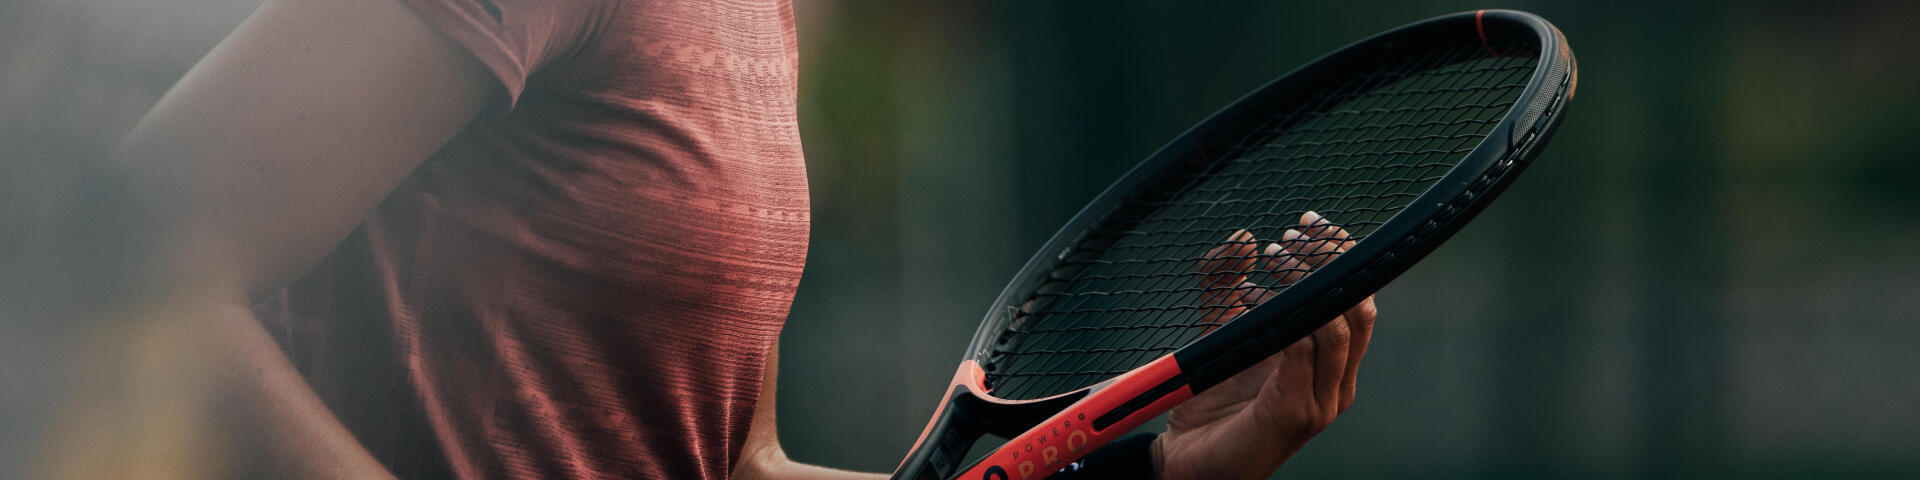 Comment bien choisir son cordage de tennis ?